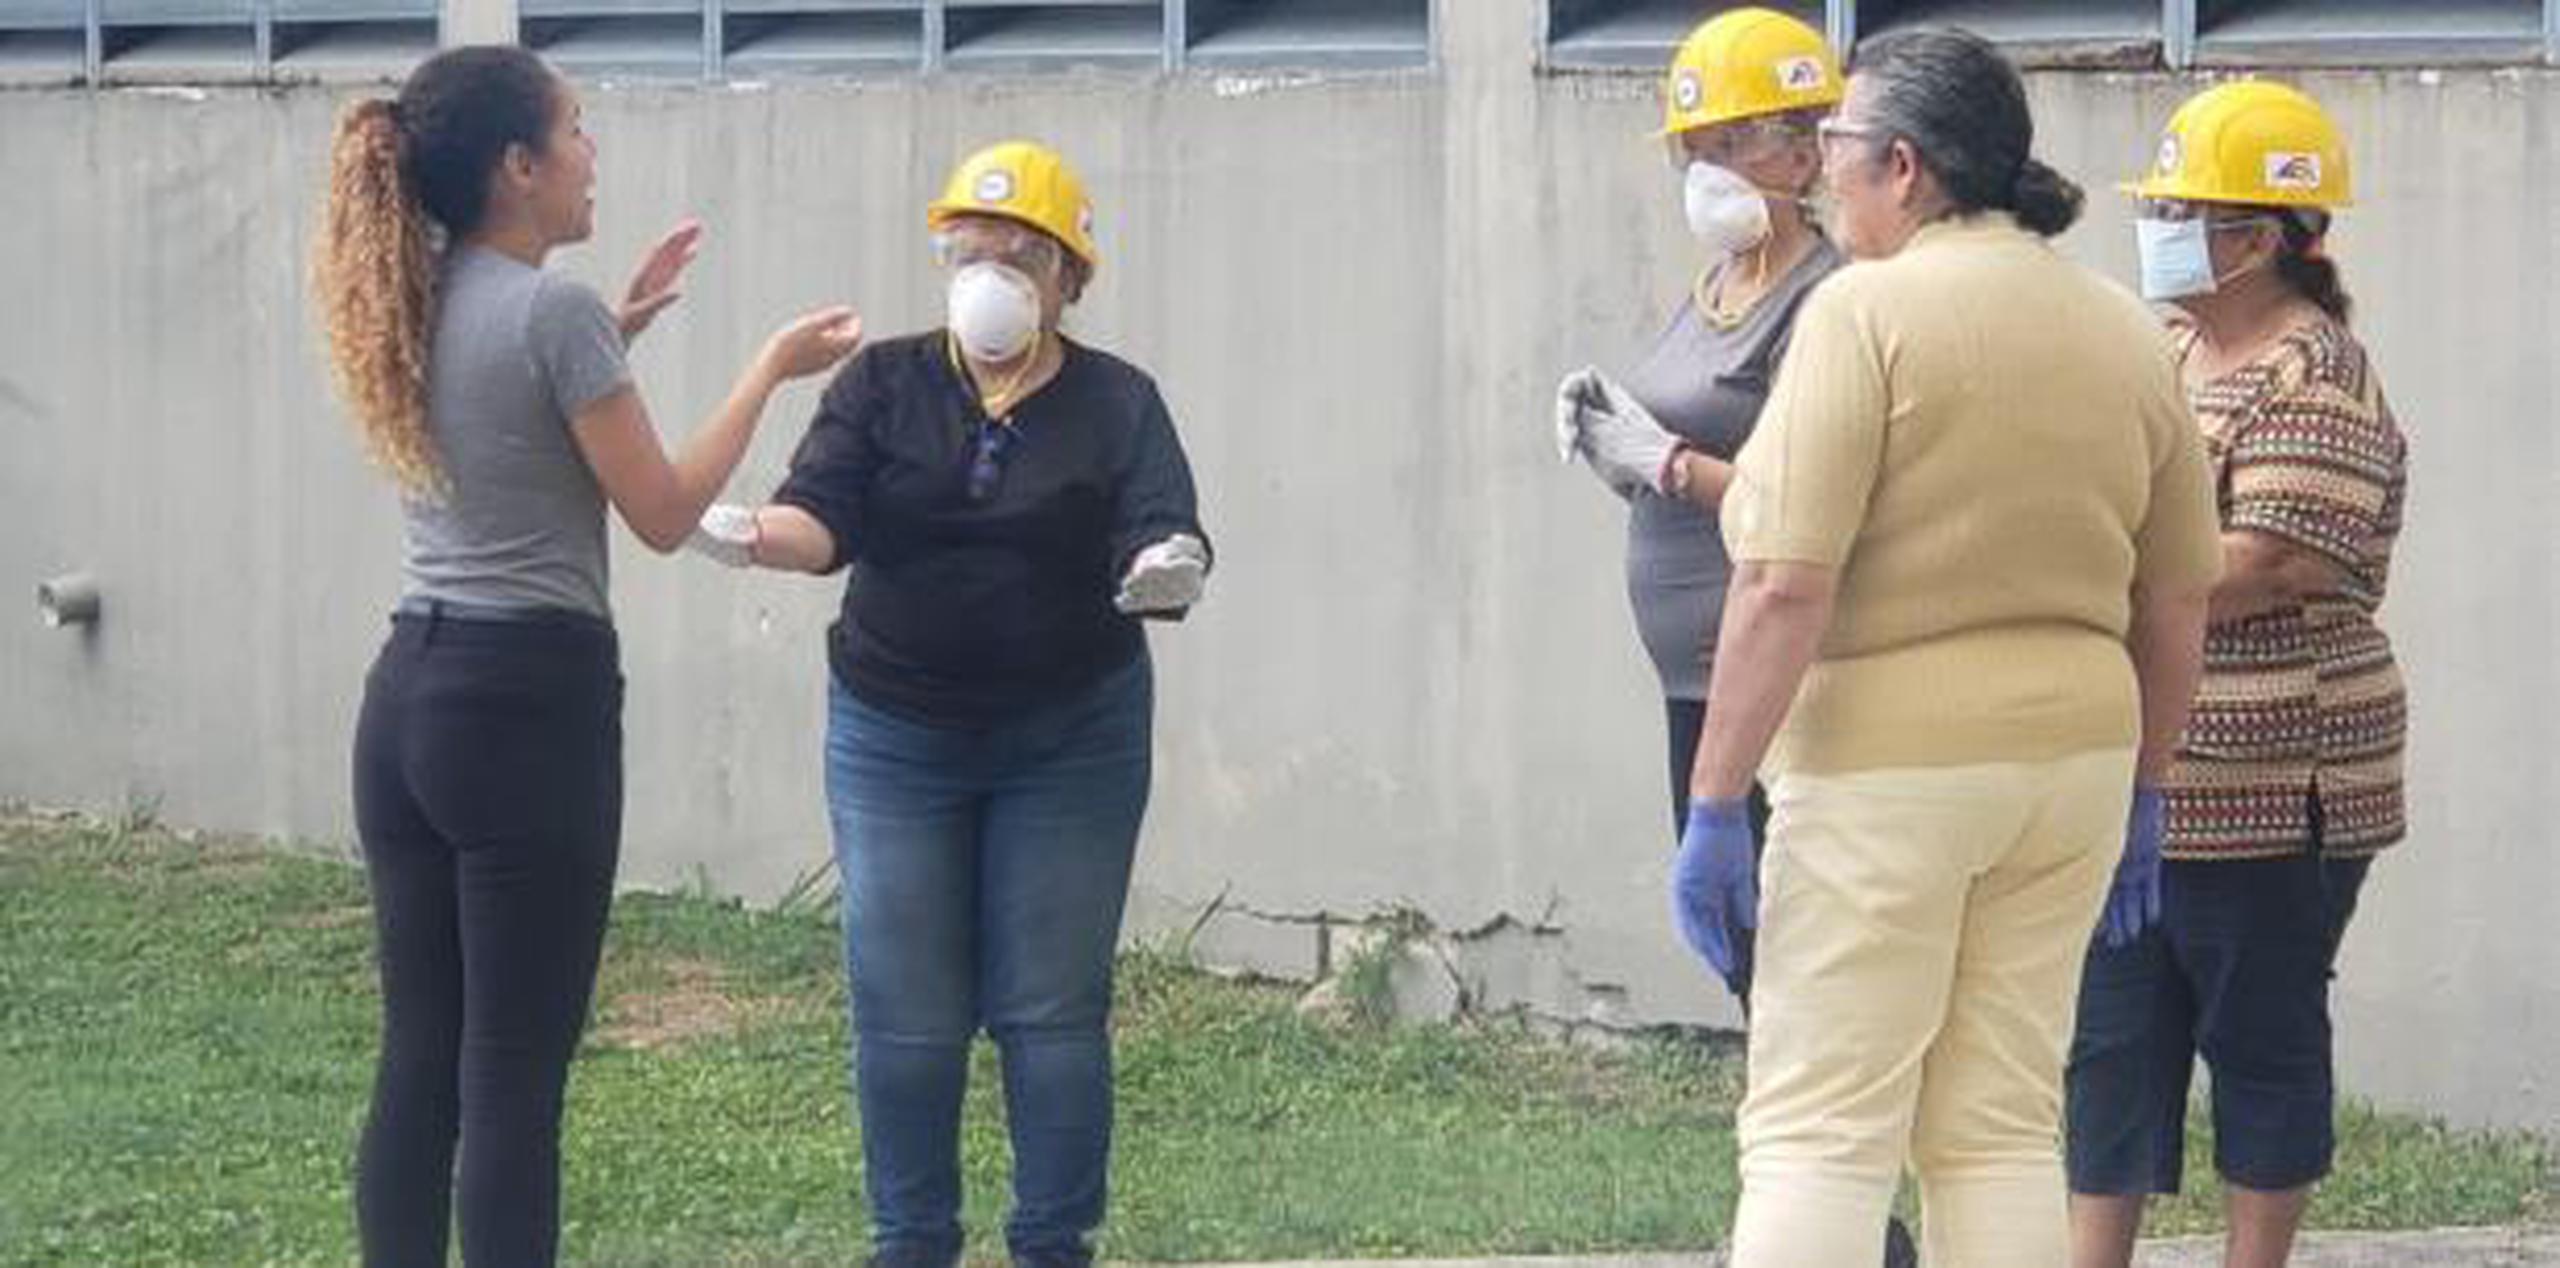 El proyecto de capacitación para sordos, que se daa través del Programa de Equipos Comunitarios de Respuesta a Emergencias, impactará próximamente los pueblos de Orocovis y San Juan. (Sandra Torres / Para Primera Hora)